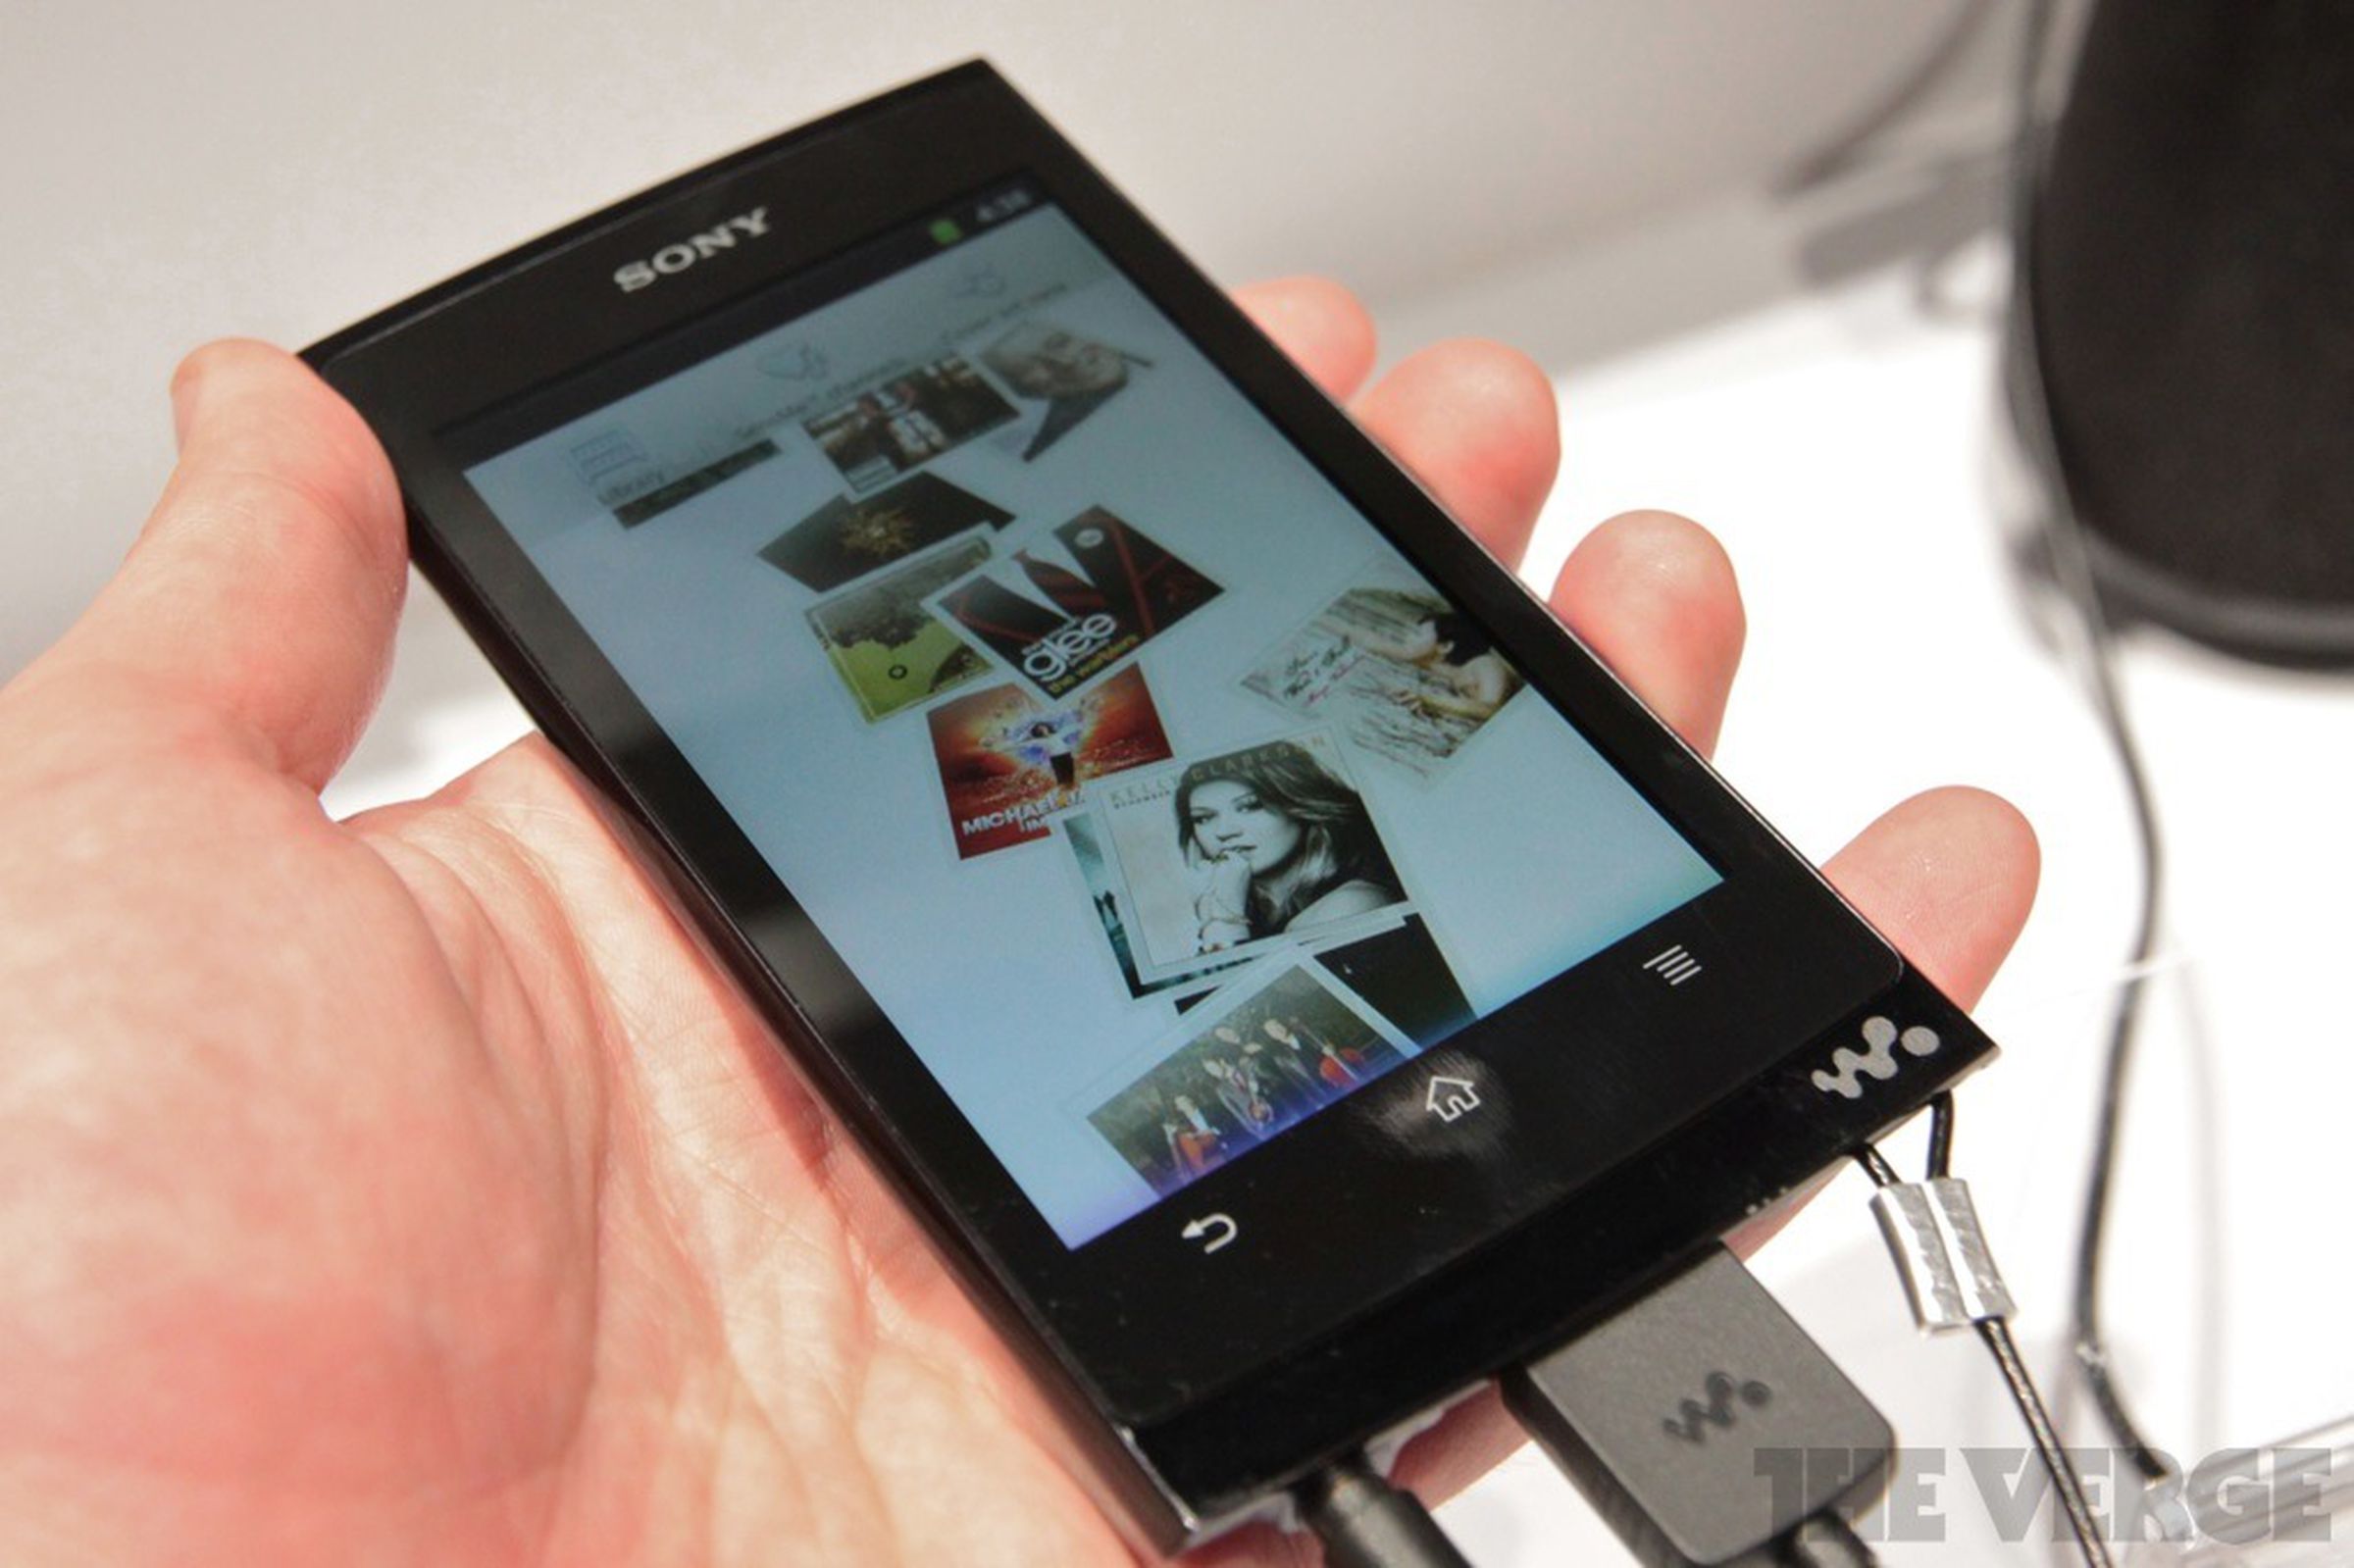 Sony Walkman Z1000 media player hands-on photos